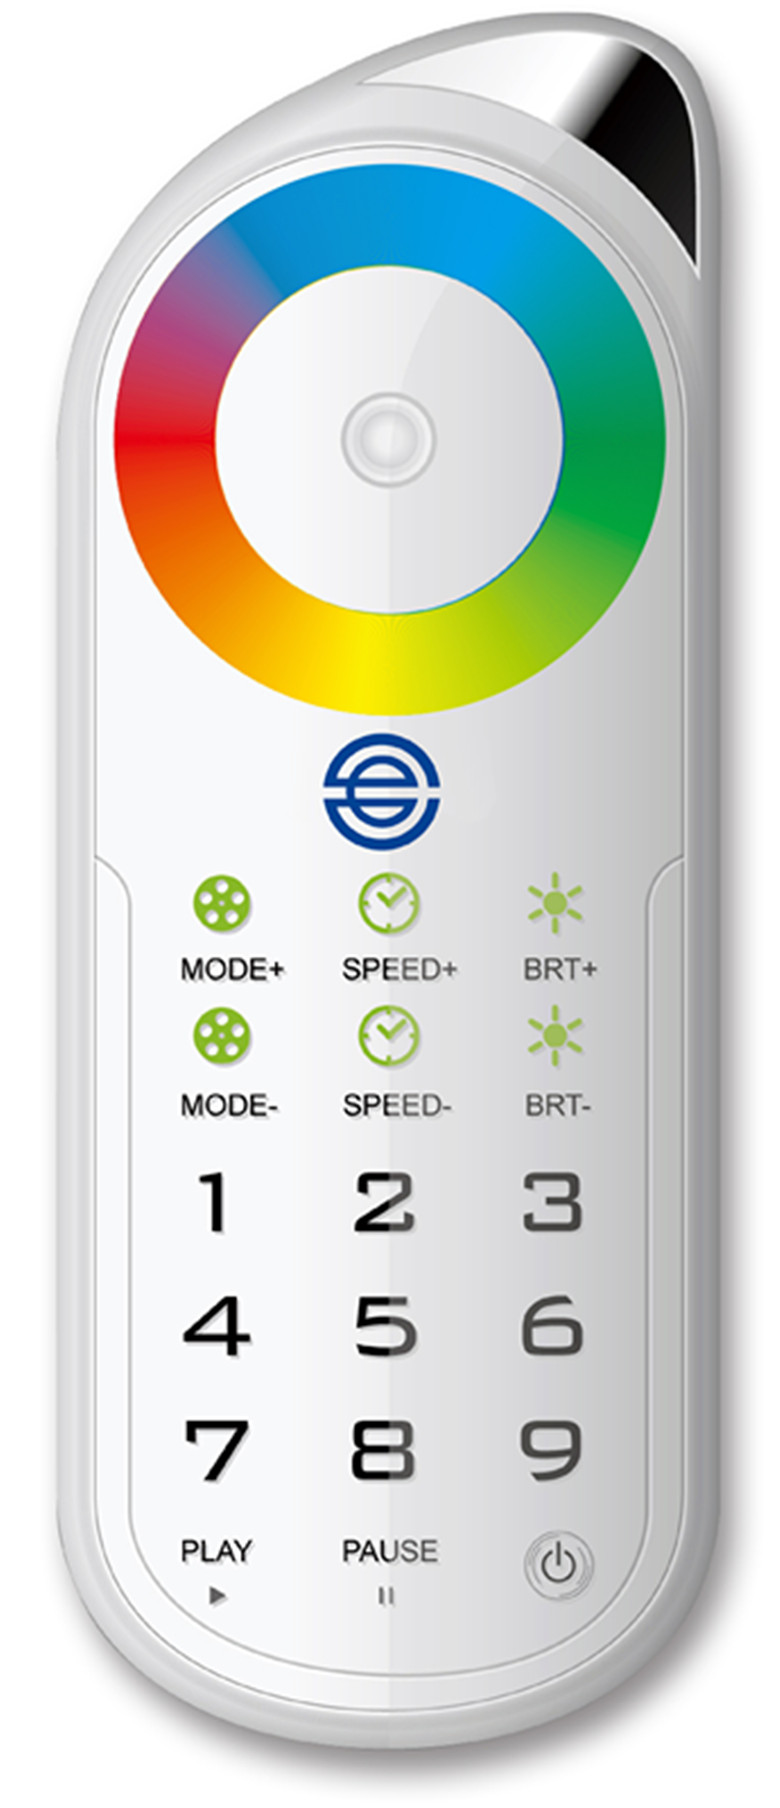 LED 2.4G全彩变色遥控器信息